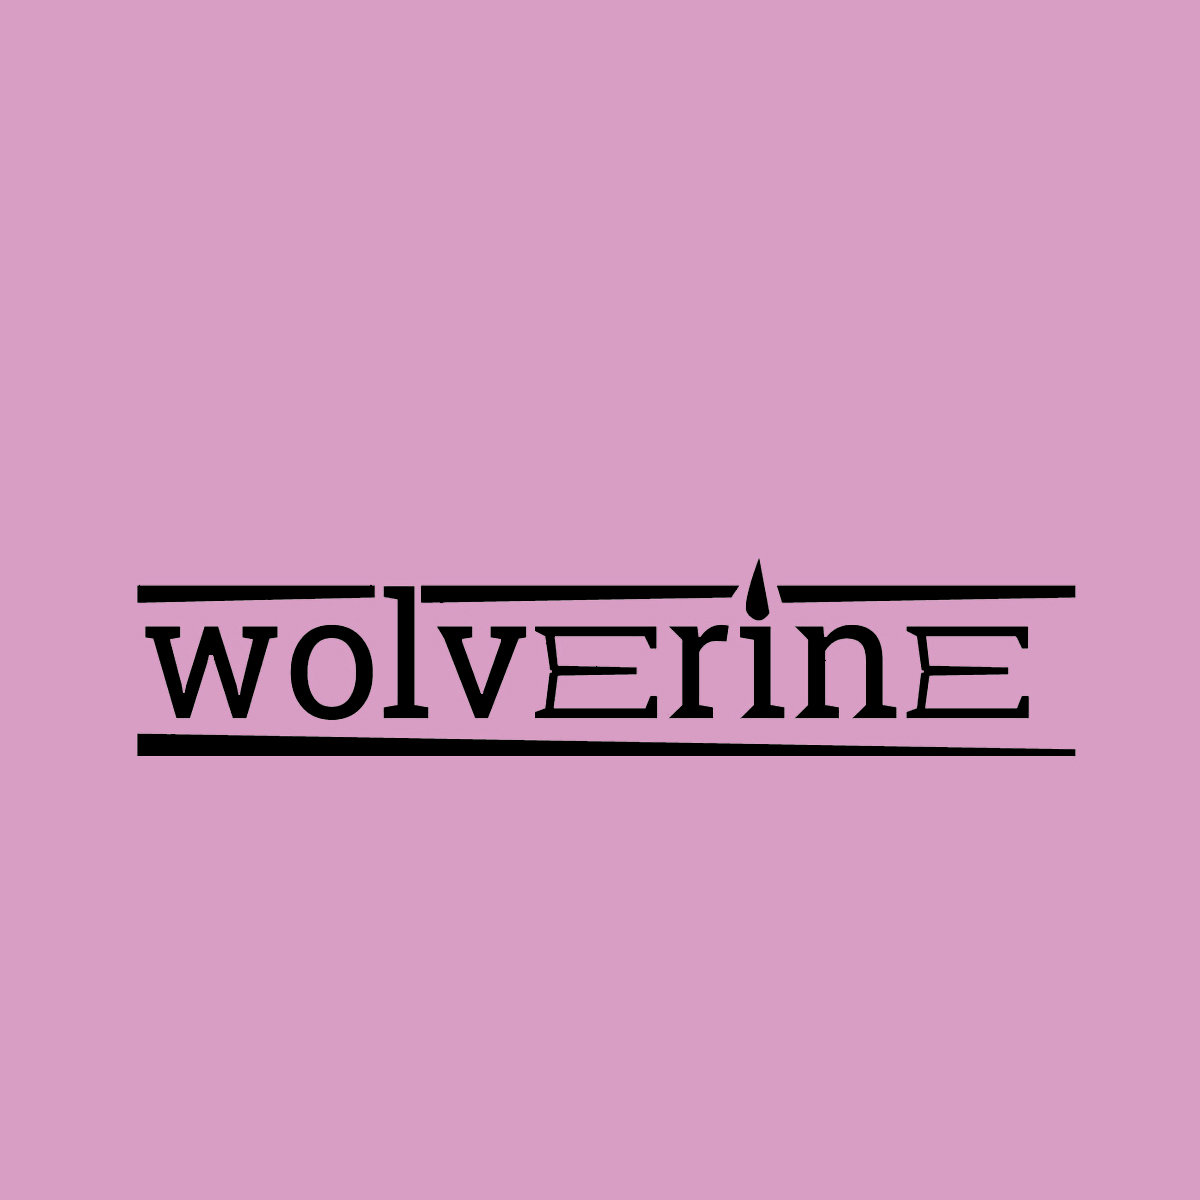 wolverine wordmark identity